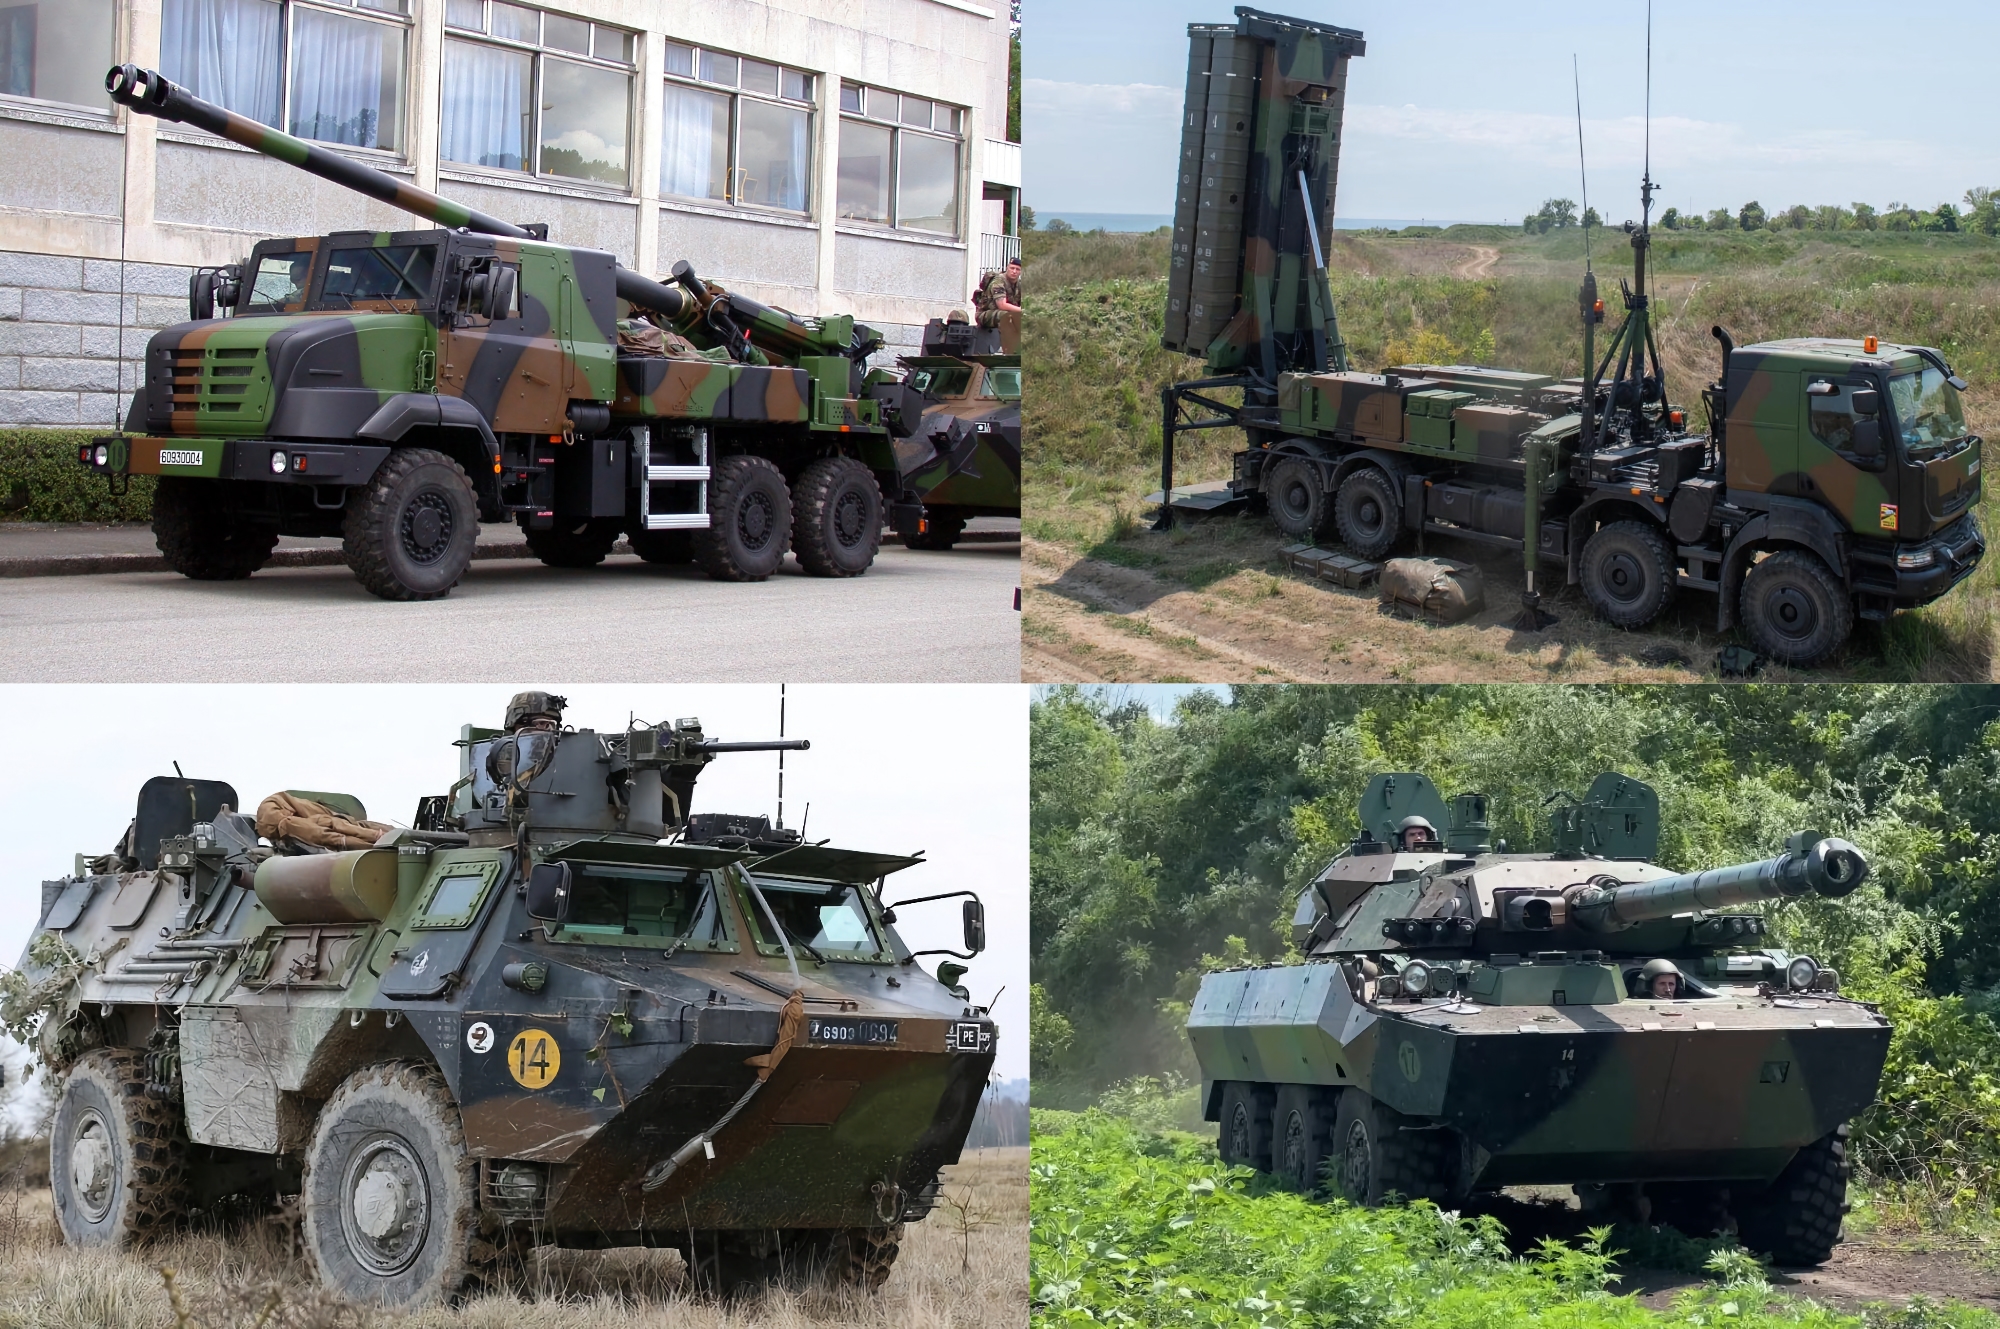 Caesar artilleriesystemen, SAMP/T SAM's, AMX10 RC tanks op wielen en VAB gepantserde personeelsvoertuigen: Frankrijk onthult gedetailleerde lijst van militaire hulp aan Oekraïne